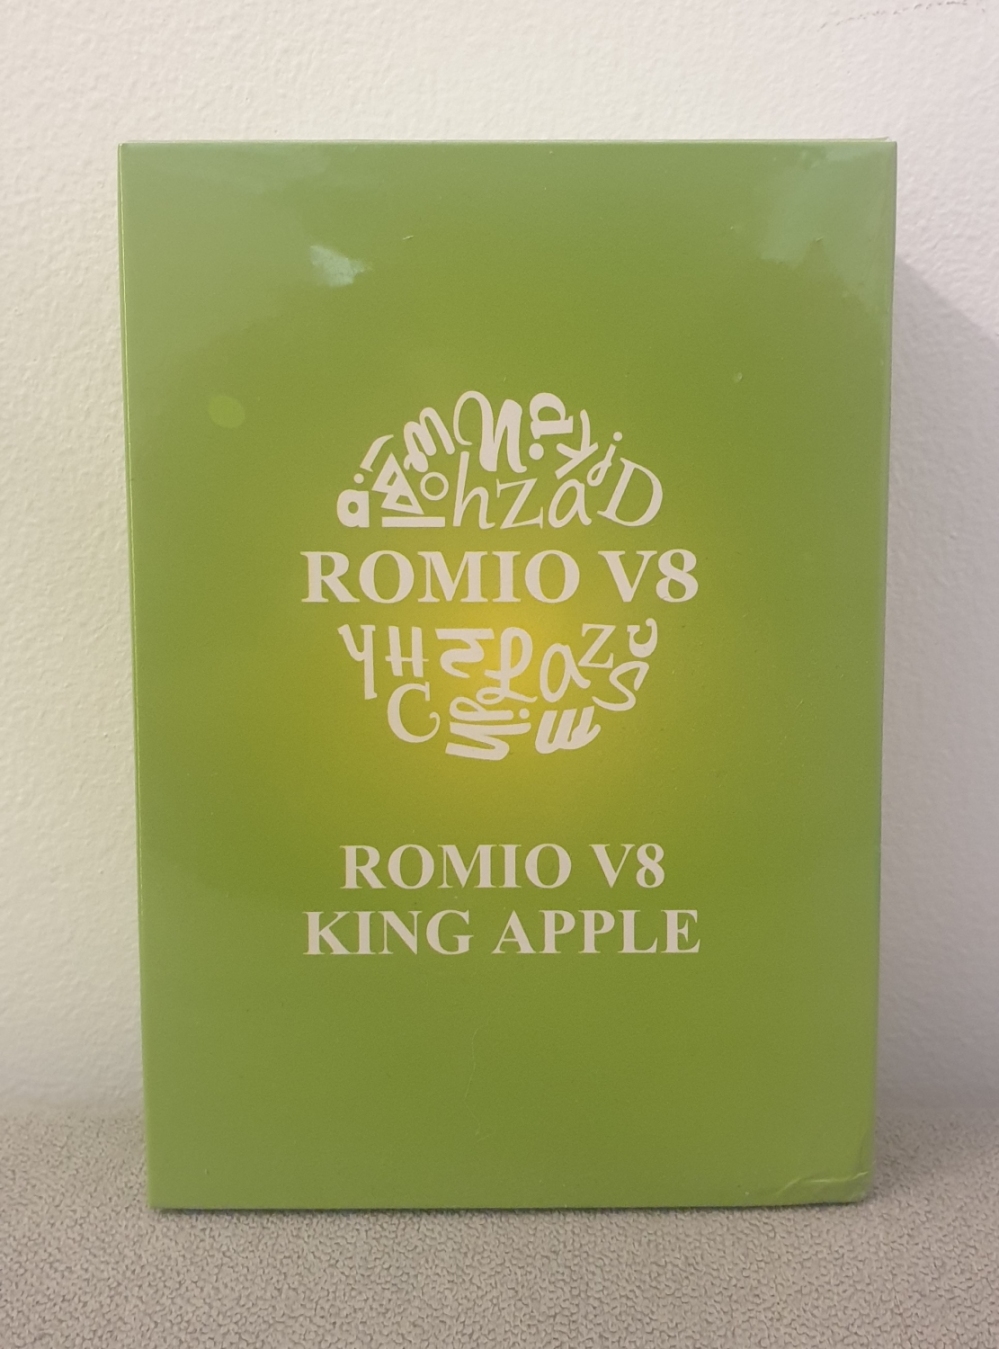 Romio apple king